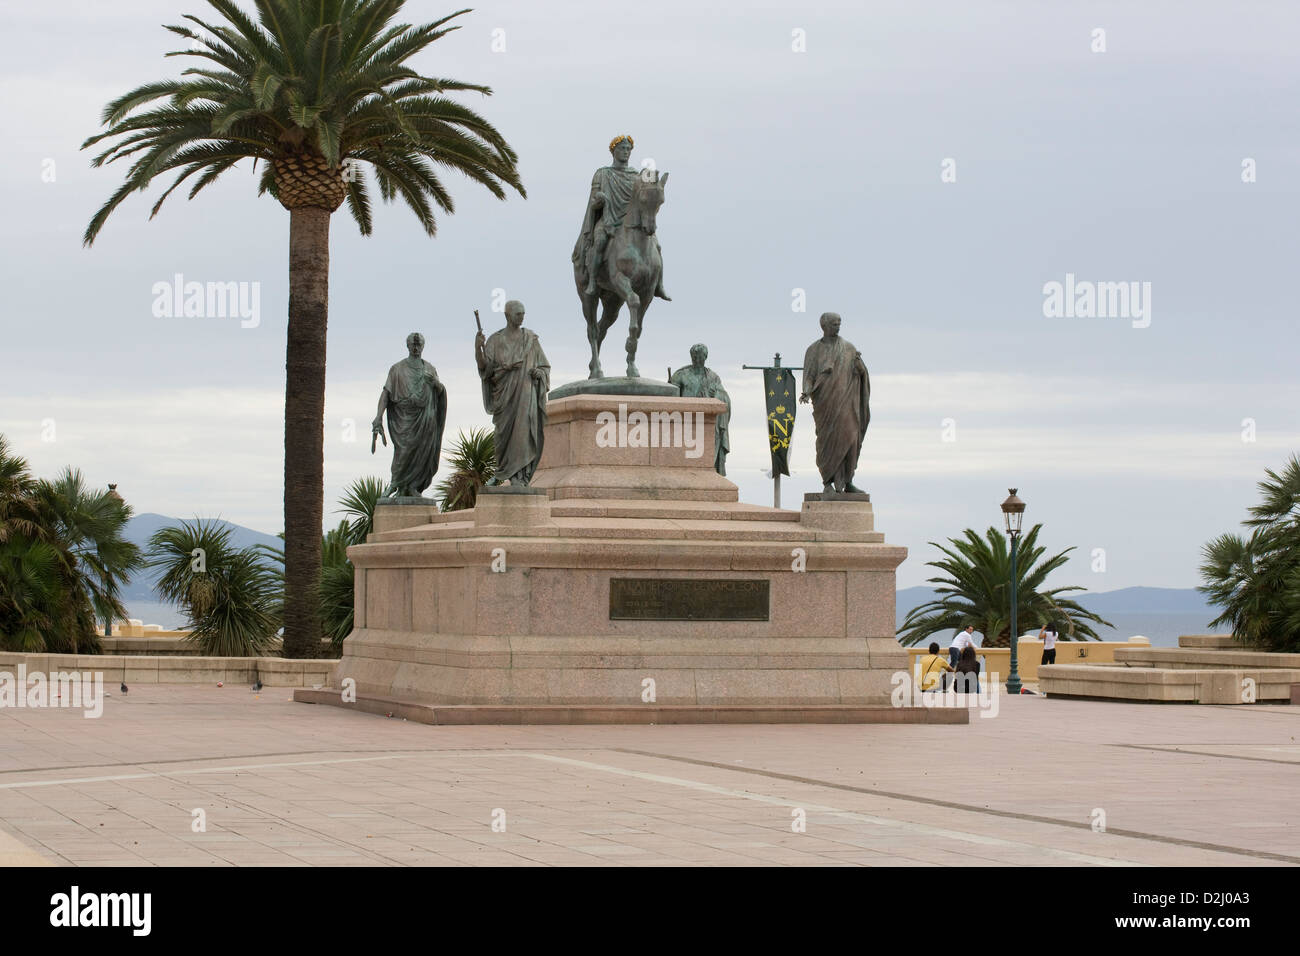 Corsica: Ajaccio - statue of Napoleon in Roman dress Stock Photo